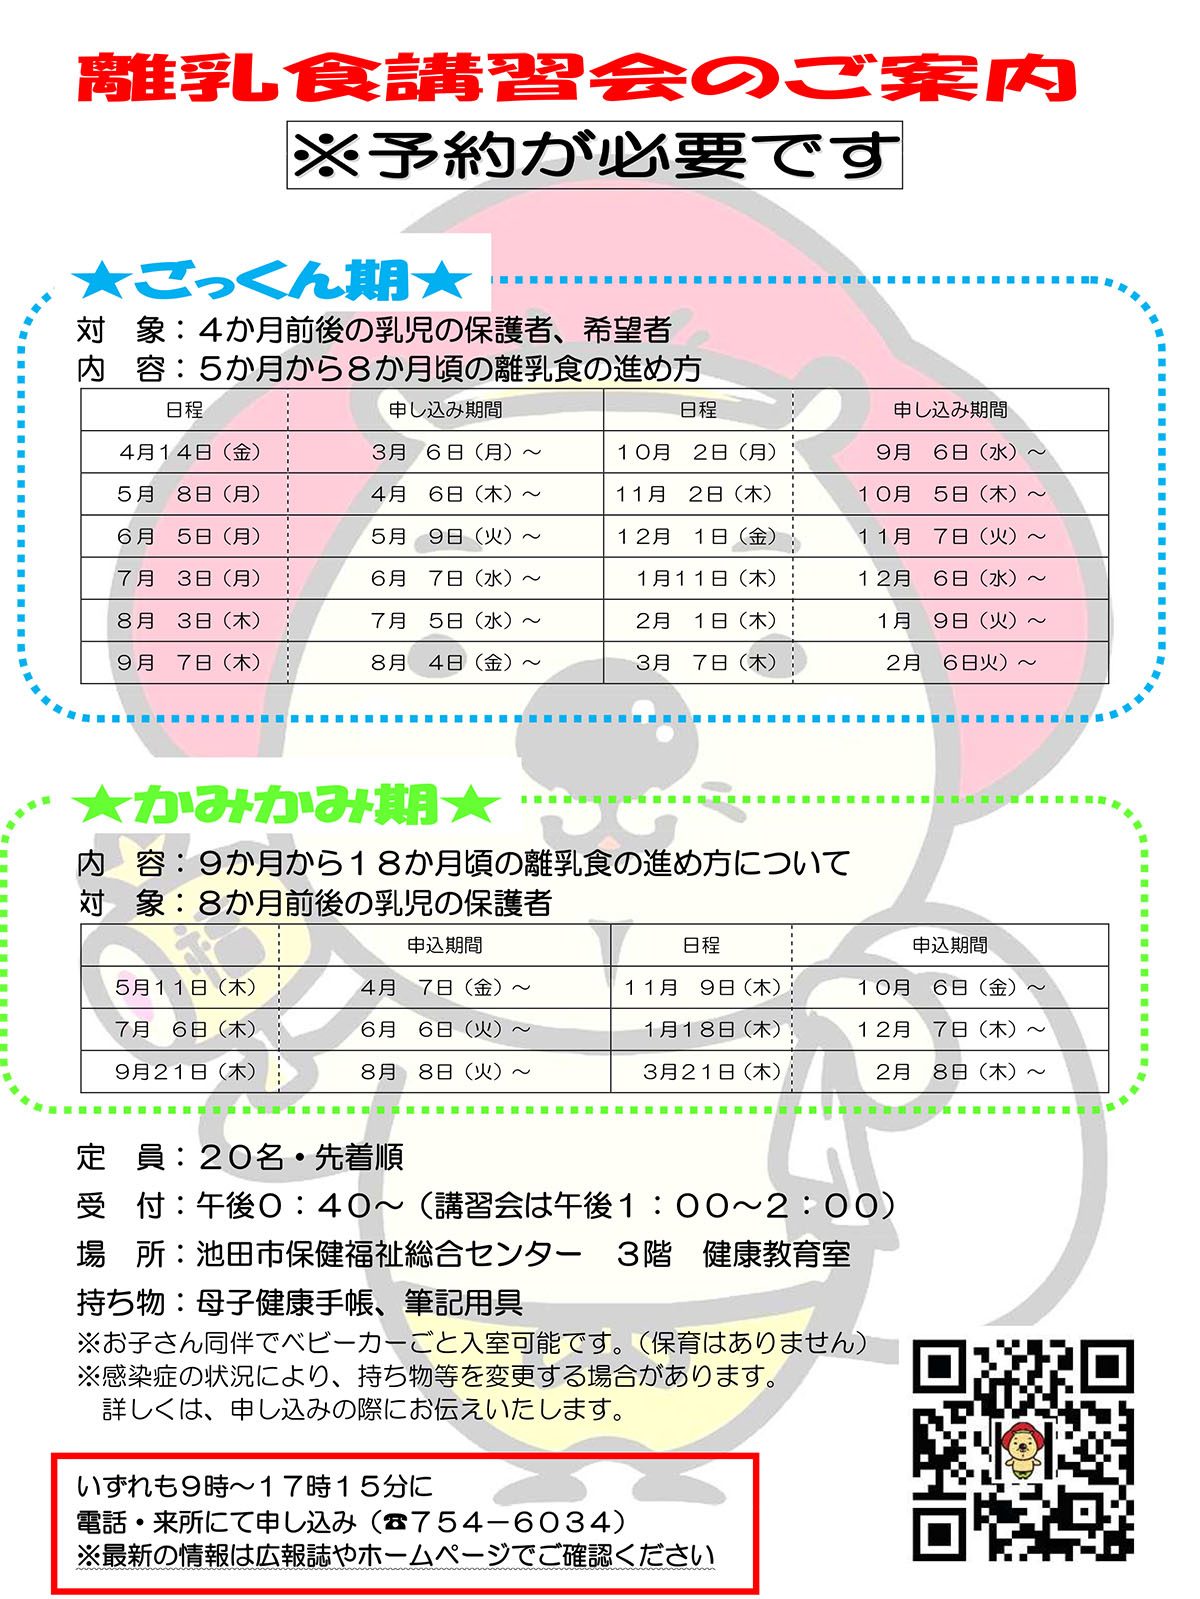 【予約制】離乳食講習会 7月3日開催ごっくん期